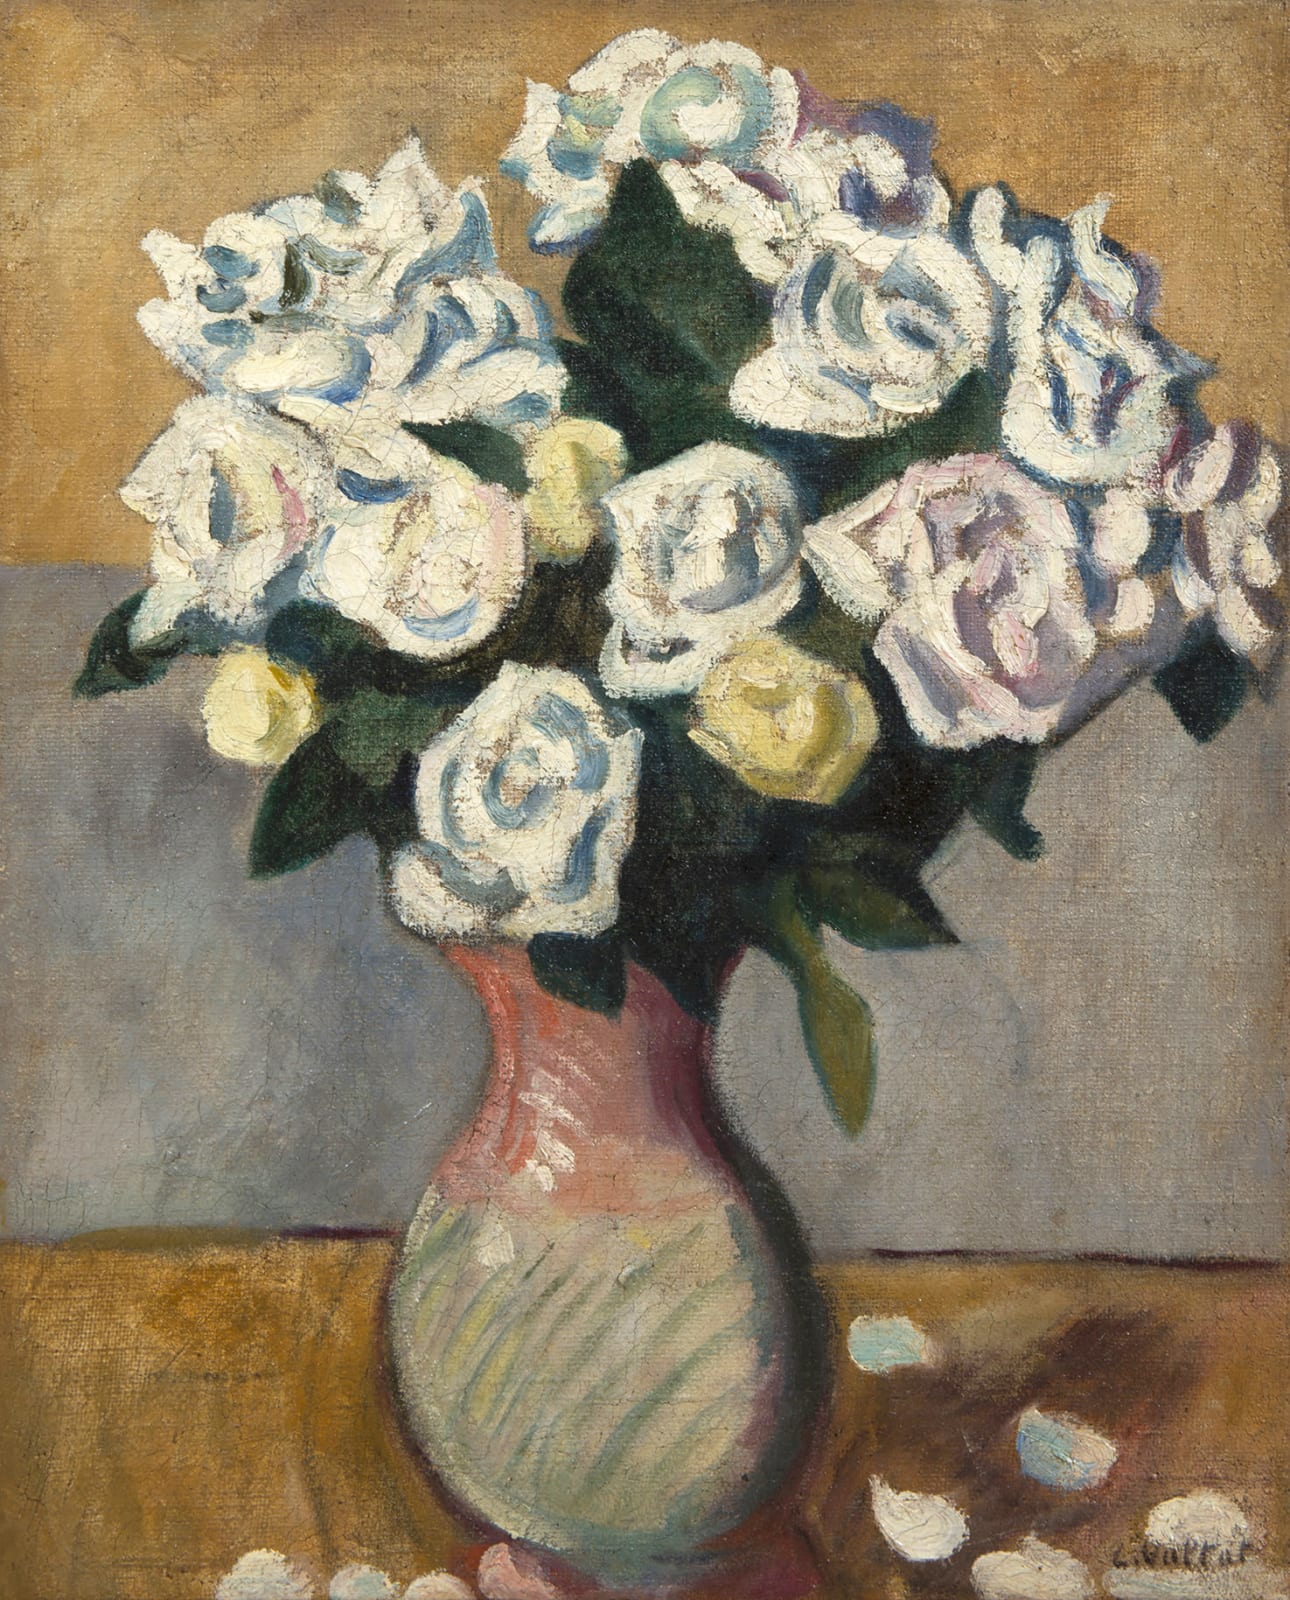 LOUIS VALTAT, Bouquet de roses blanches, circa 1910